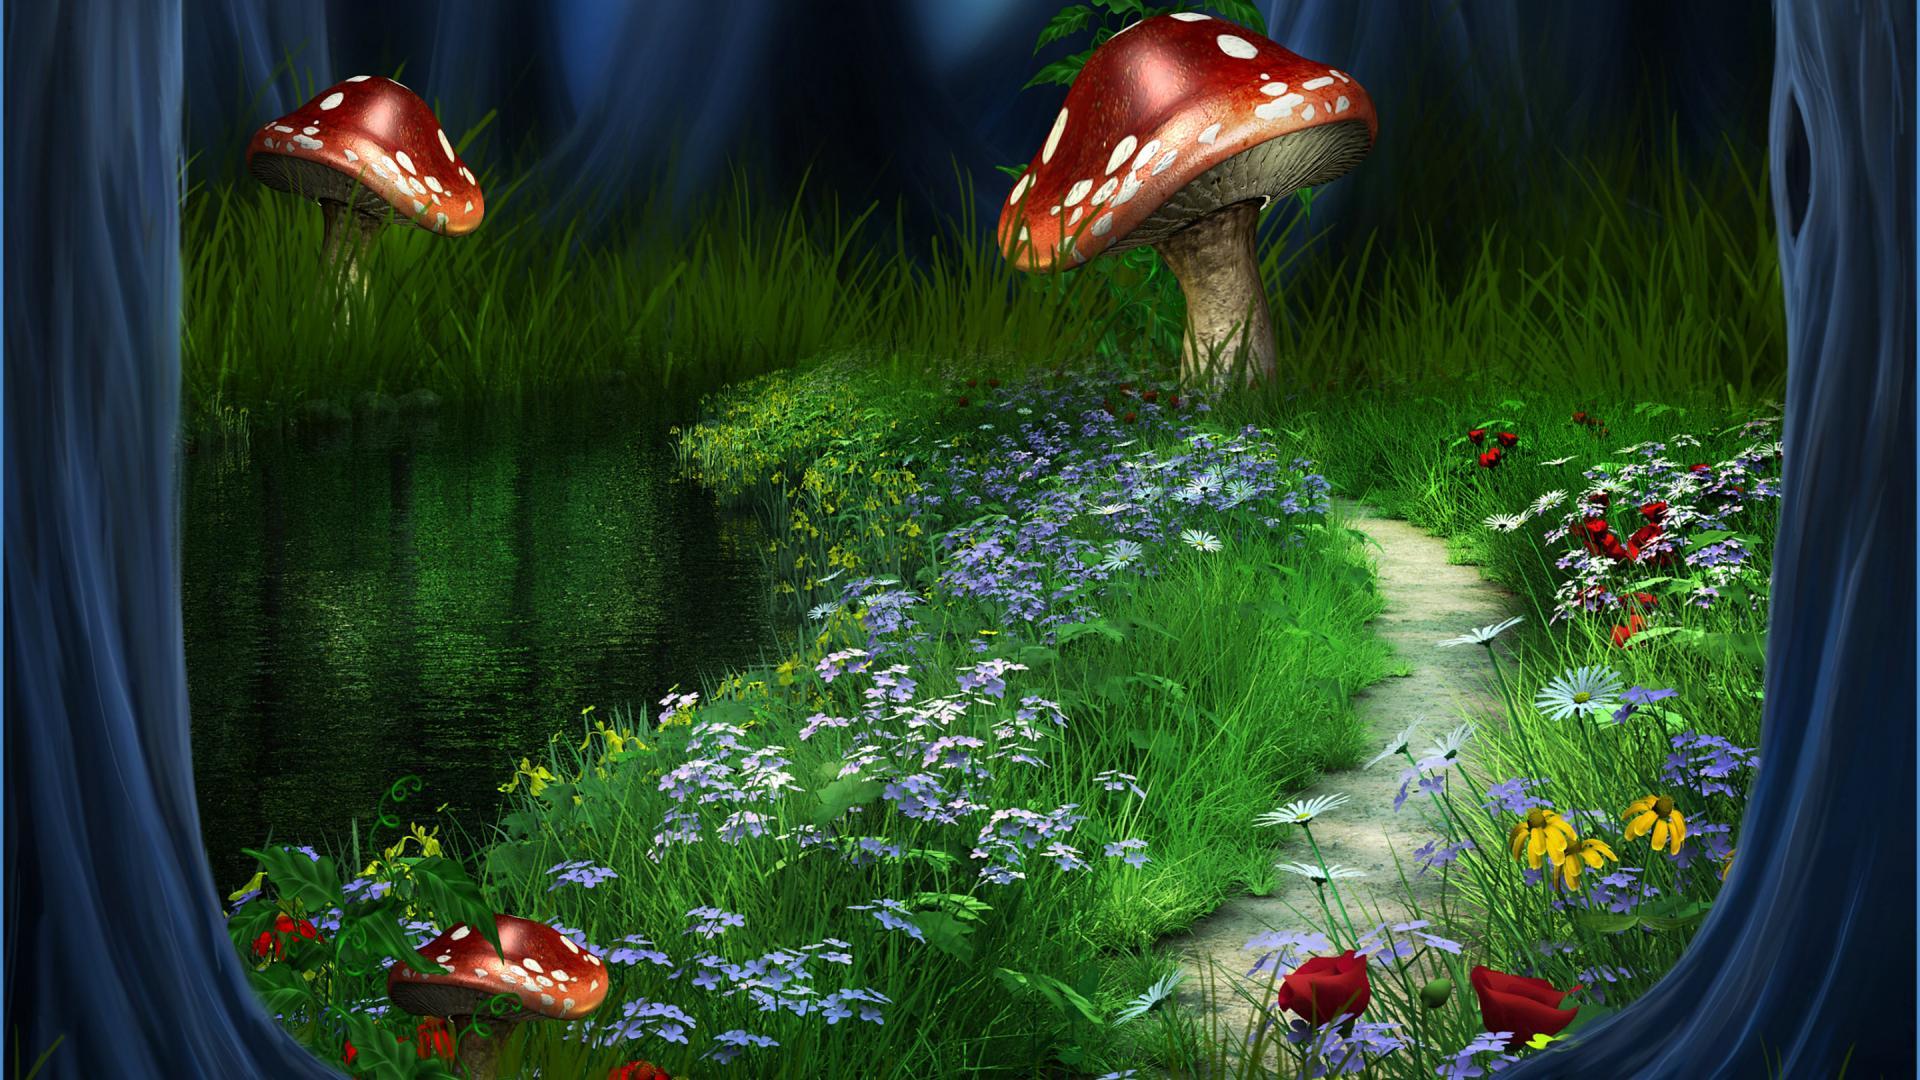 Cute Mushroom Wallpapers - Top Free Cute Mushroom Backgrounds